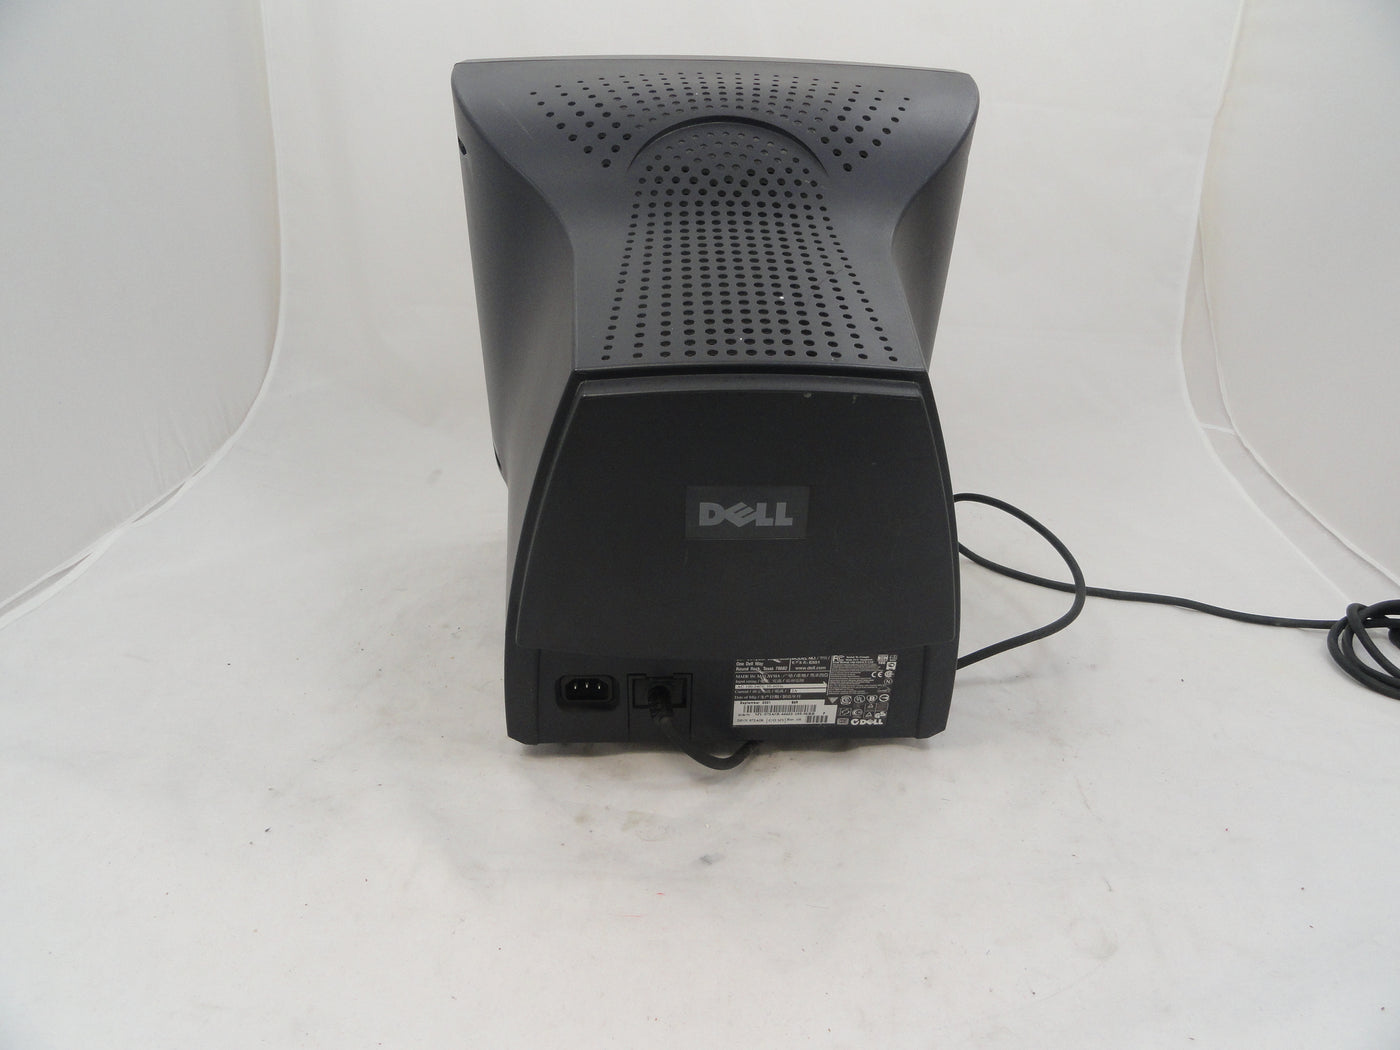 PR02264_E551_Dell 15" CRT Monitor - Black - 1024x768 - 60Hz - 0 - Image3